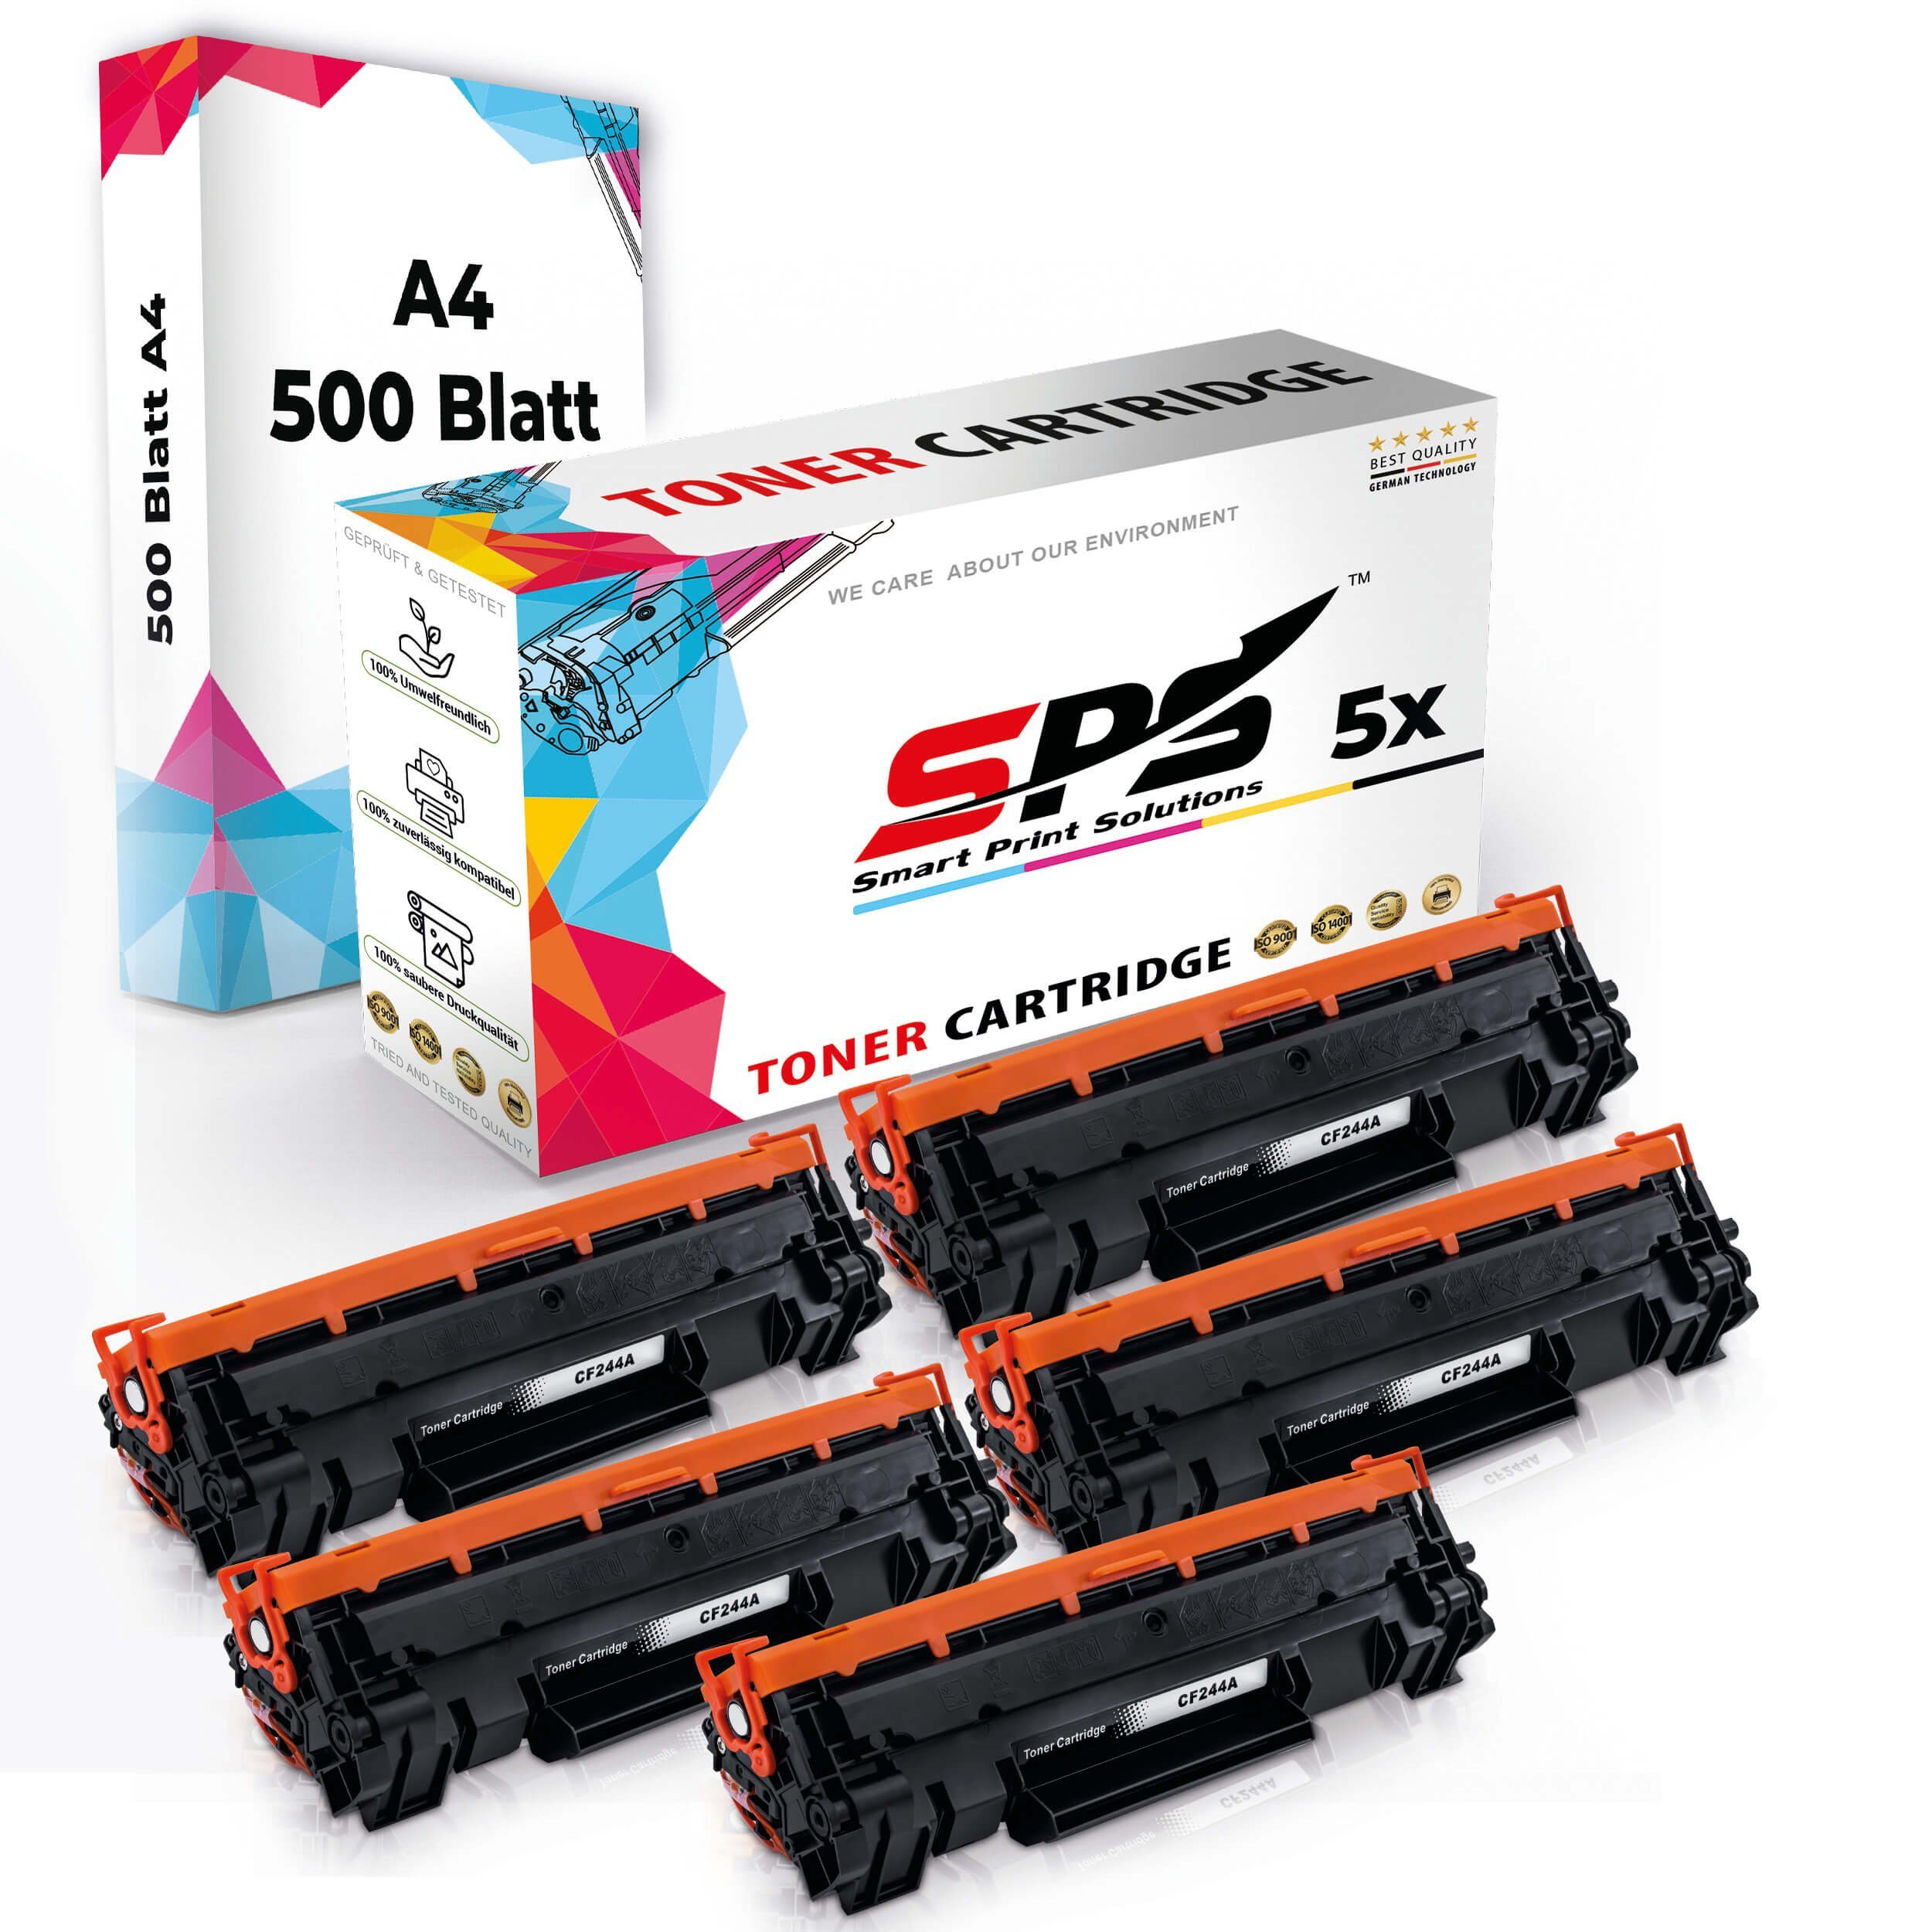 5x Druckerpapier) Pack, + Druckerpapier (5er Toner,1x A4 Kompatibel, 5x A4 SPS Tonerkartusche Set Multipack